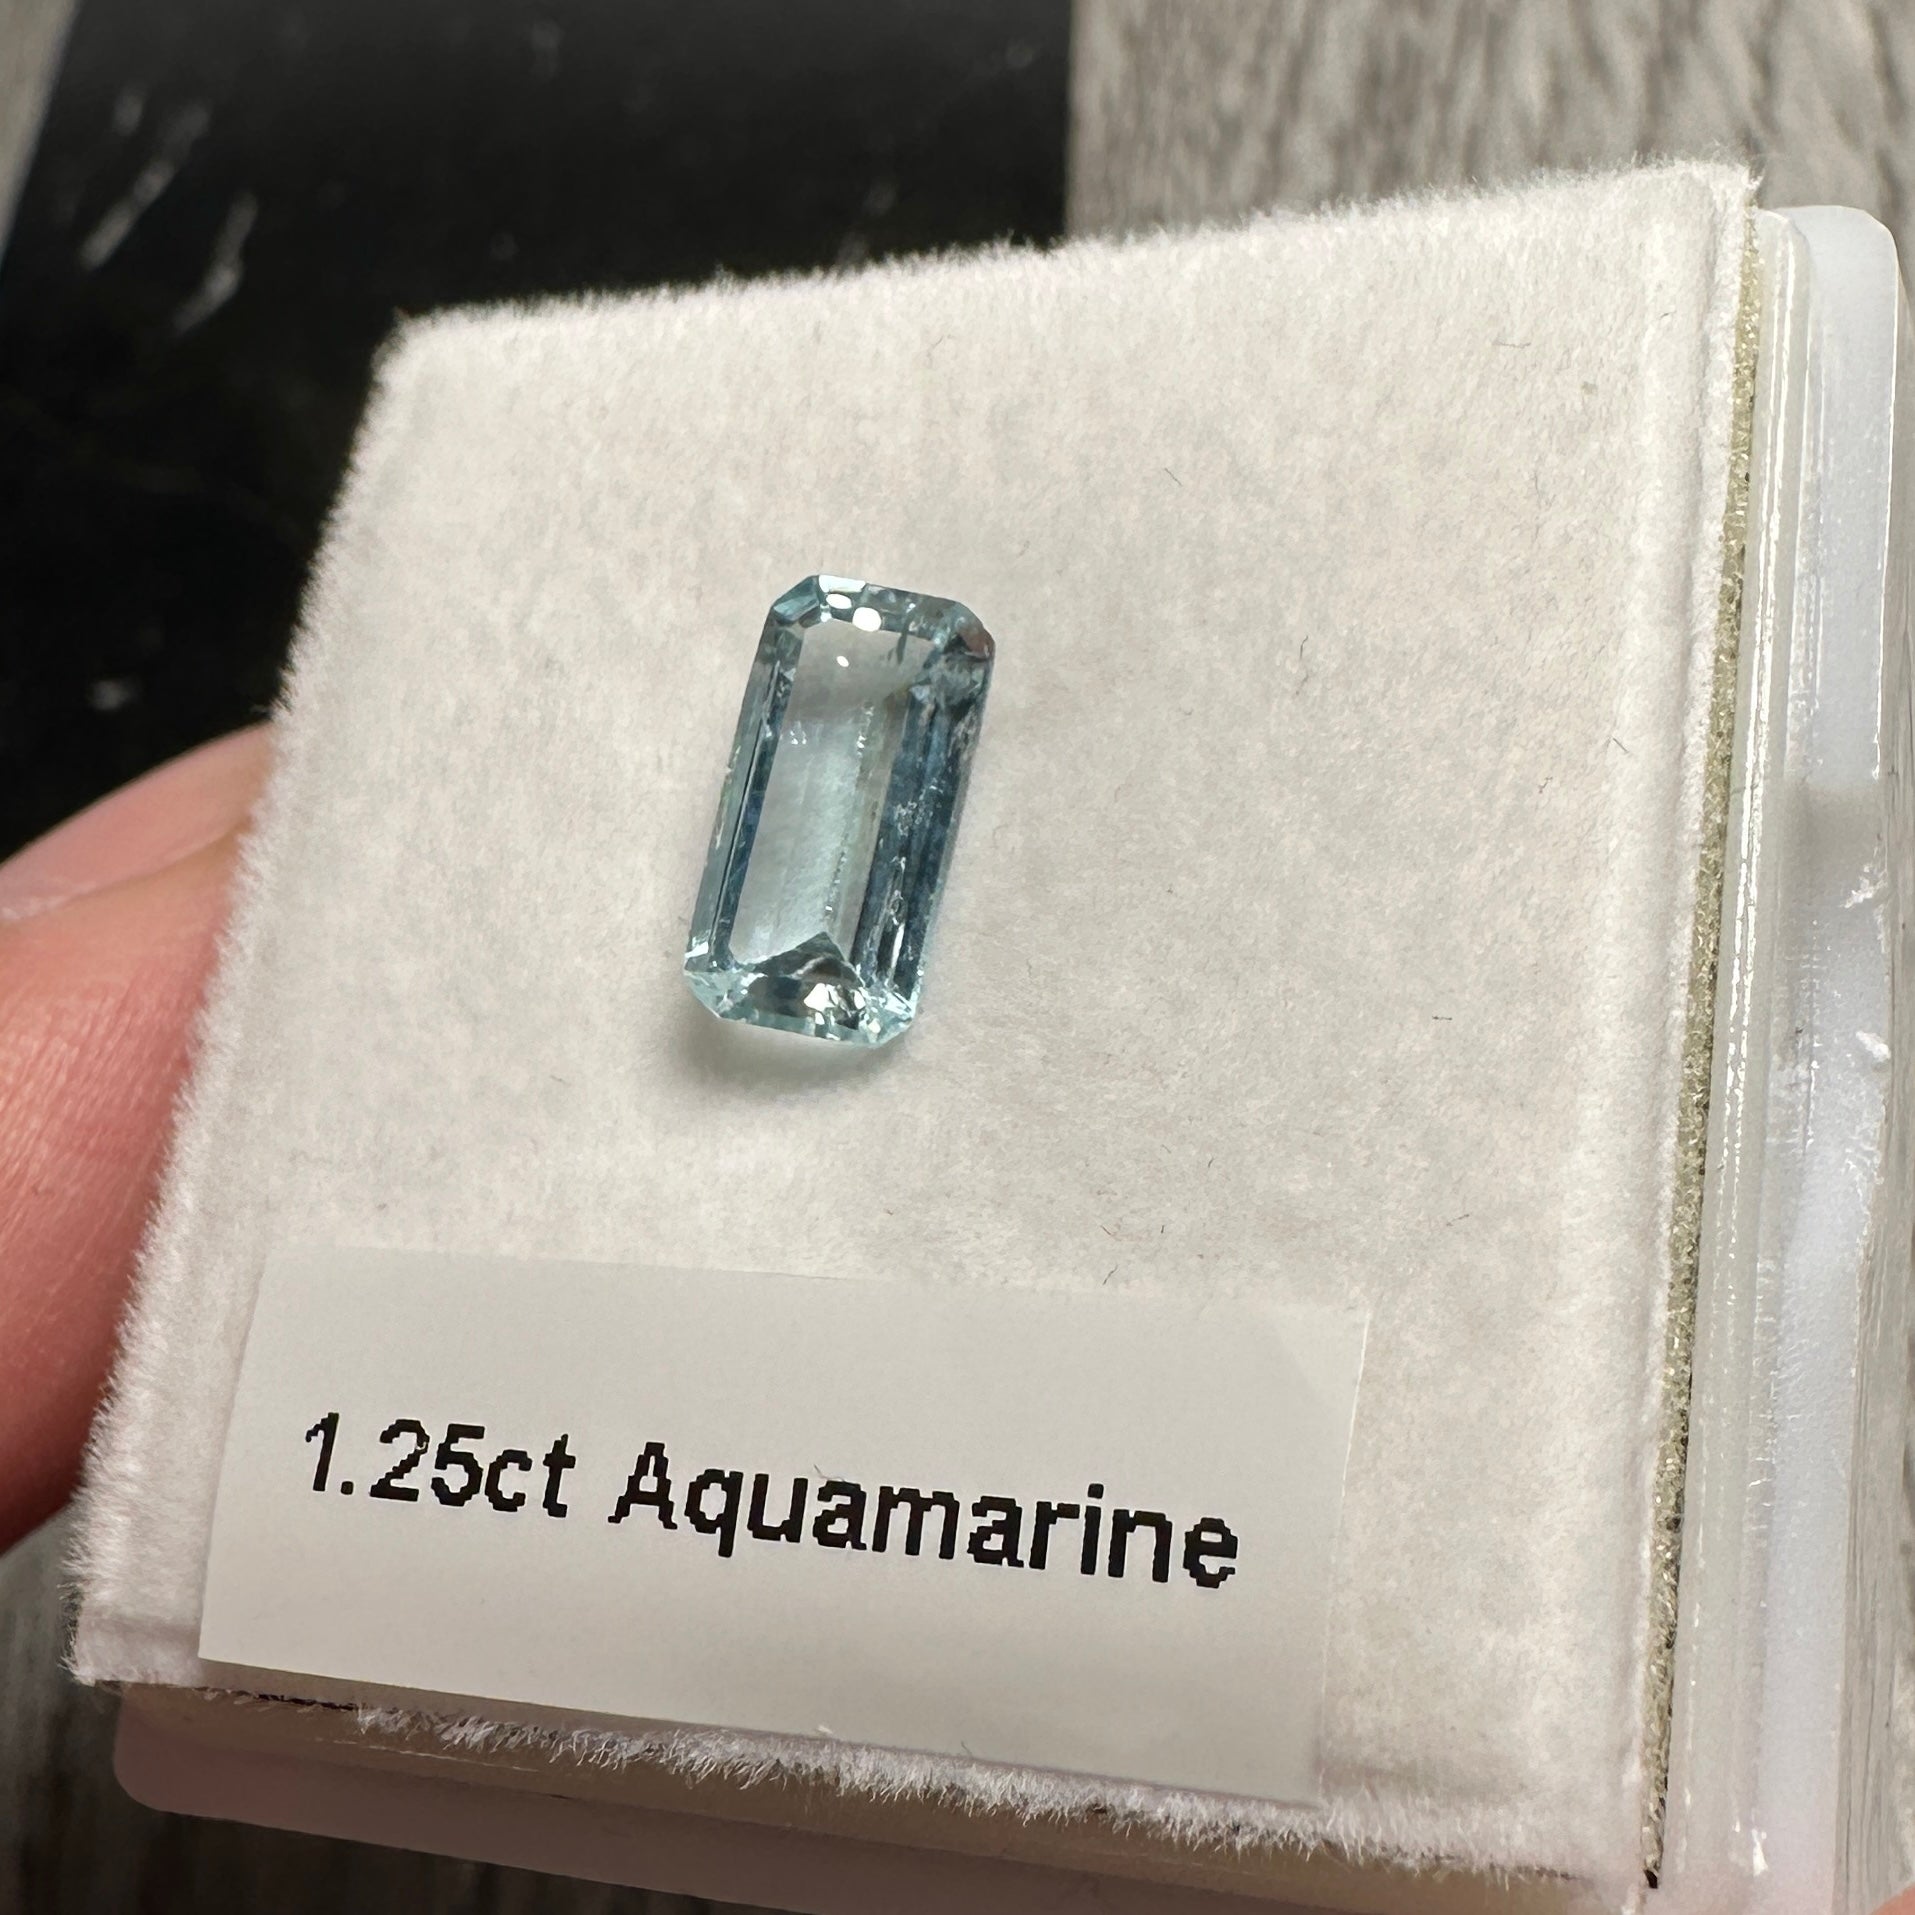 1.25ct Aquamarine, Zambia, Unheated Untreated